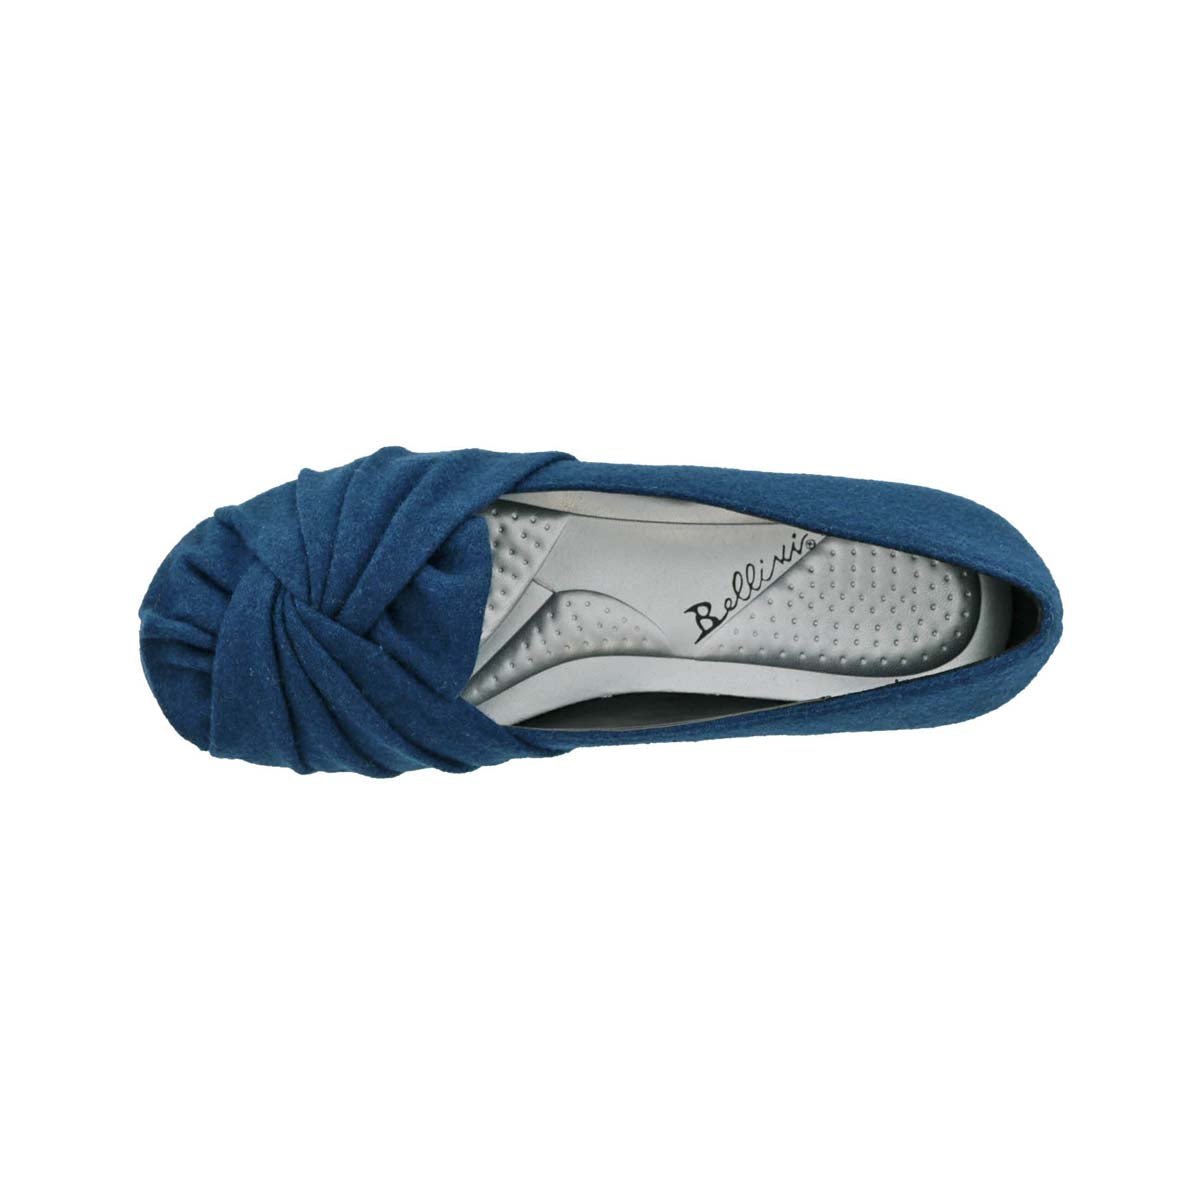 BELLINI SNUG WOMEN SLIP-ON SHOE'S IN TURQUOISE WOOL - TLW Shoes